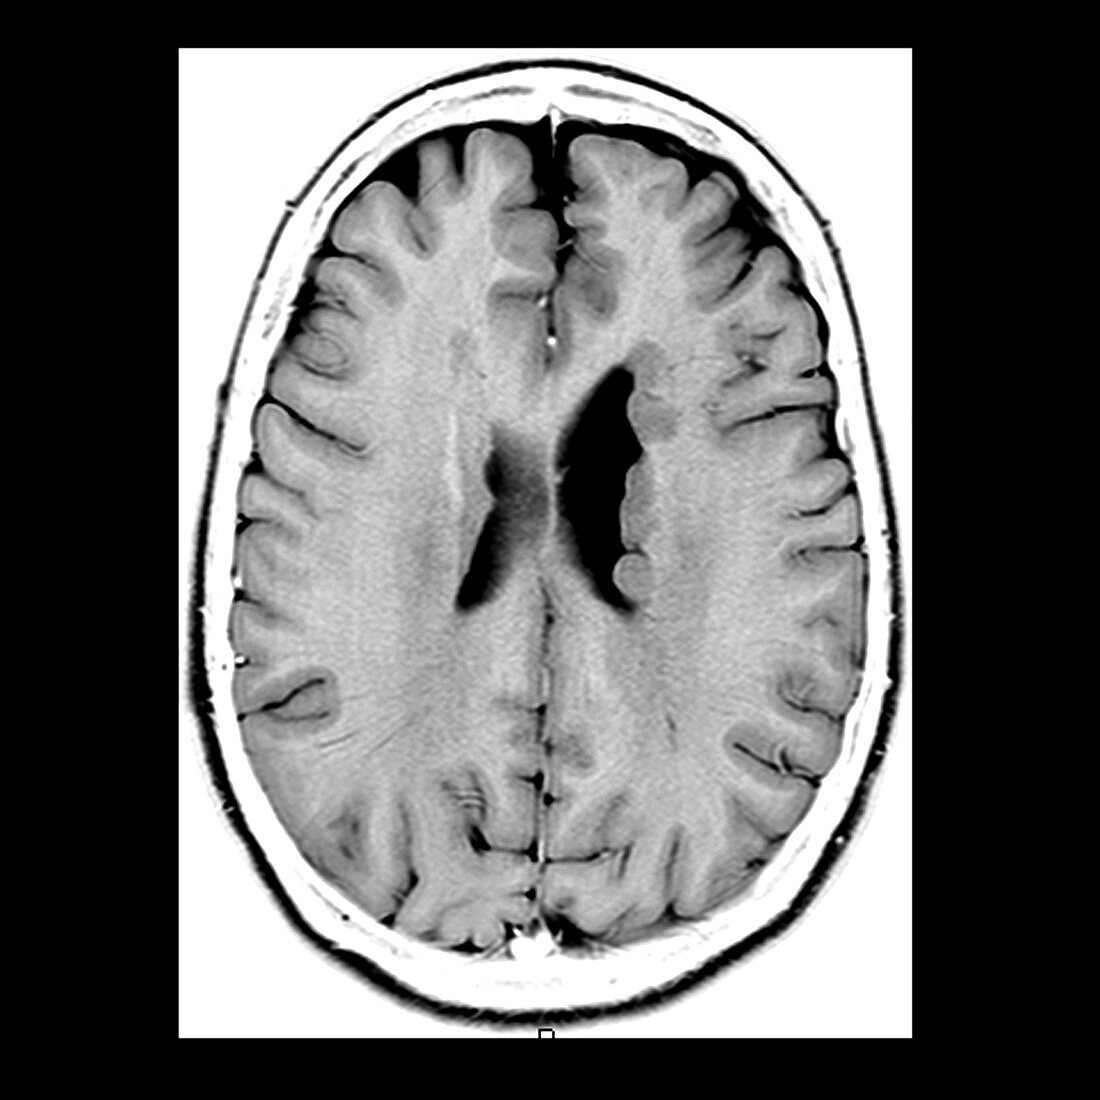 Heterotopic Gray Matter,MRI